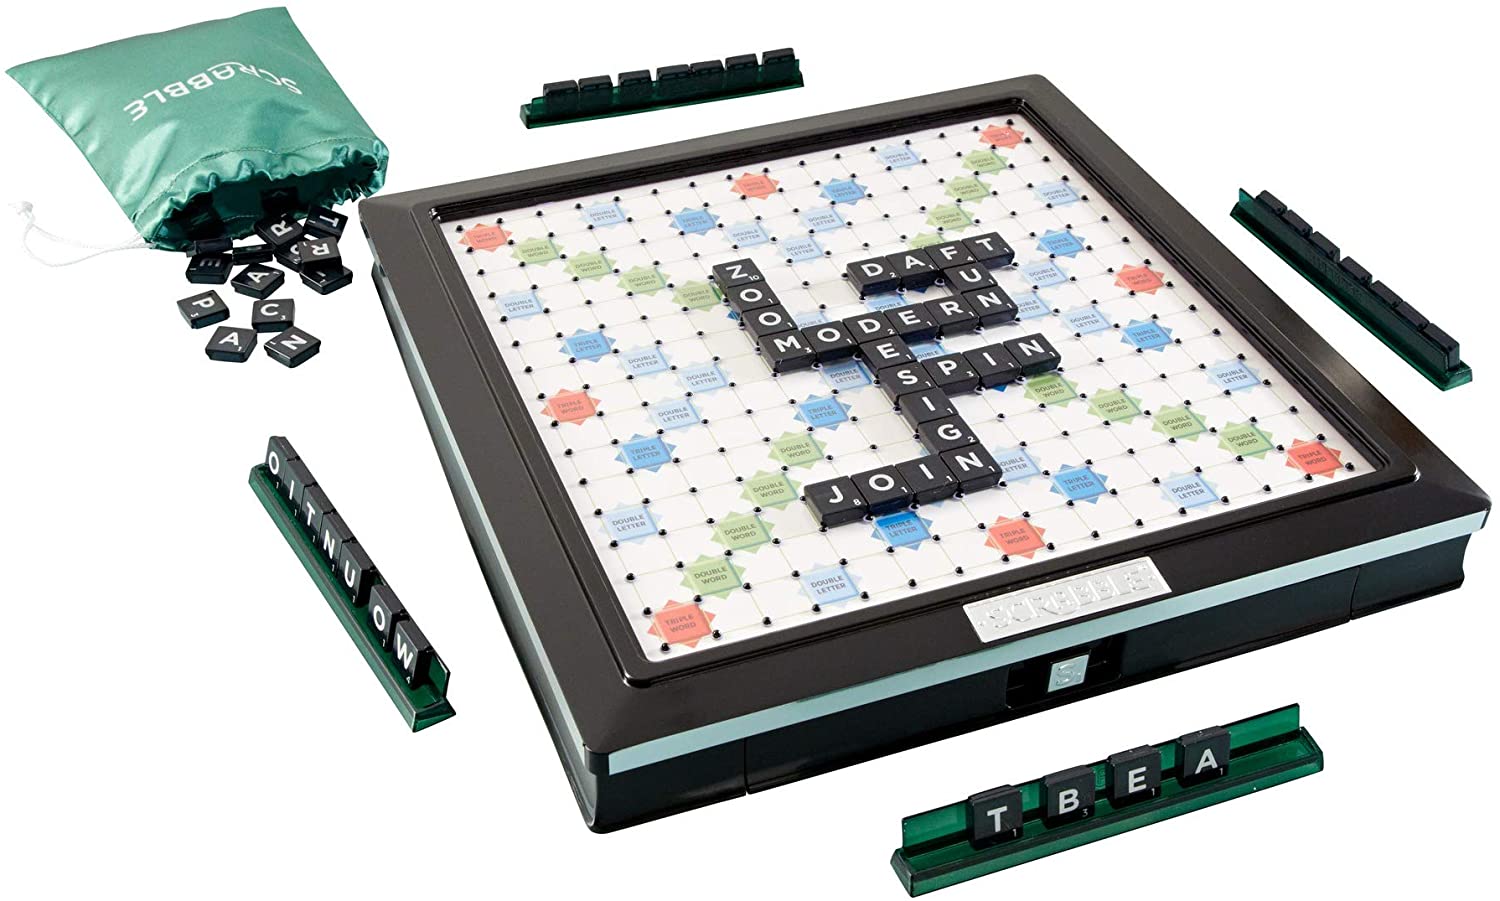 Buy Scrabble Deluxe Online